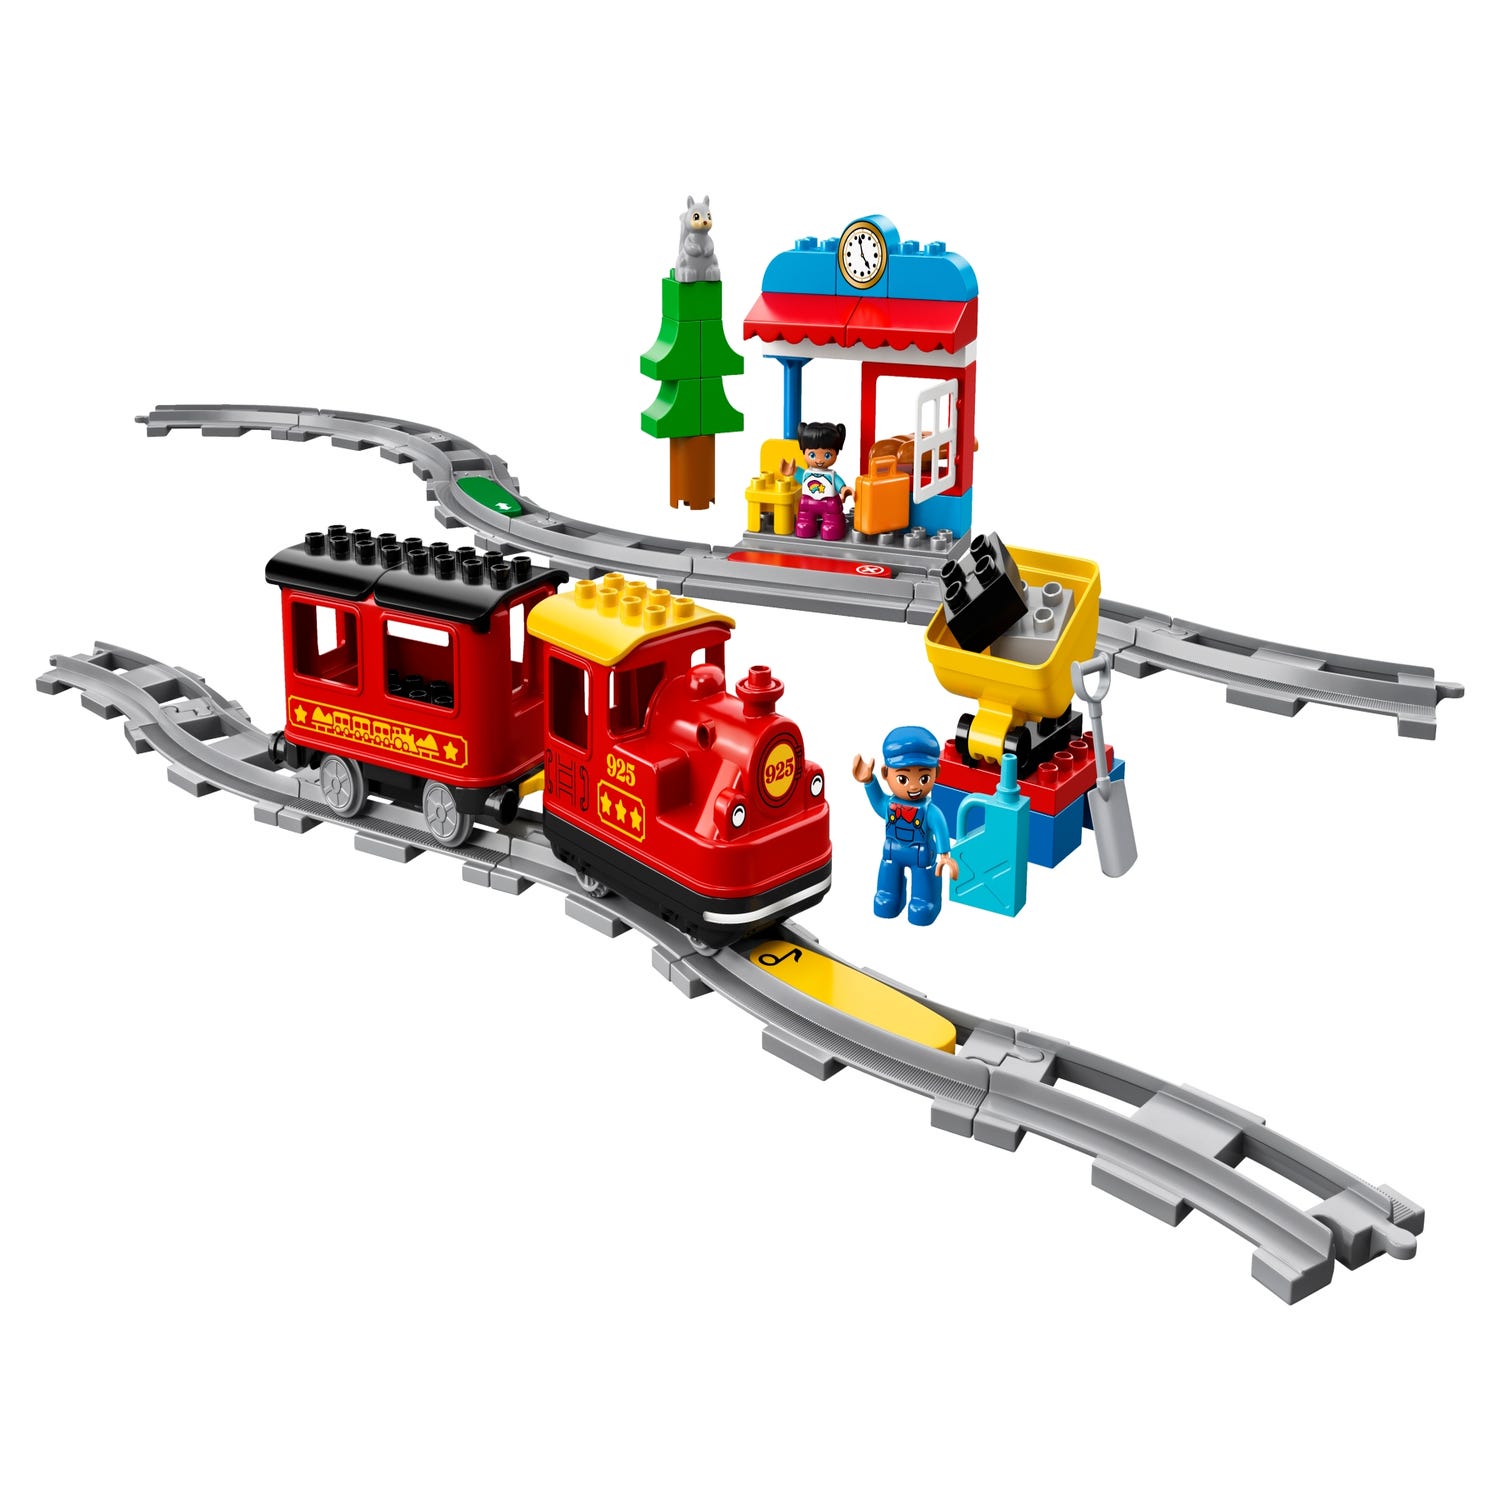 Le train à vapeur - LEGO® DUPLO® Ma ville - 10874